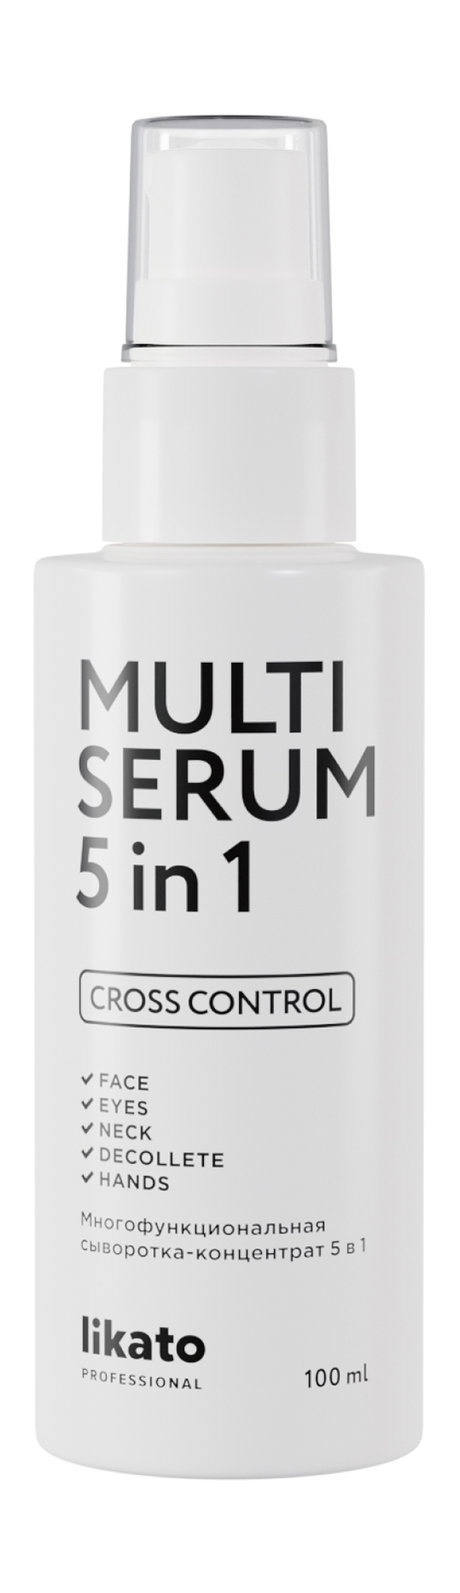 likato professional multi serum 5-in-1